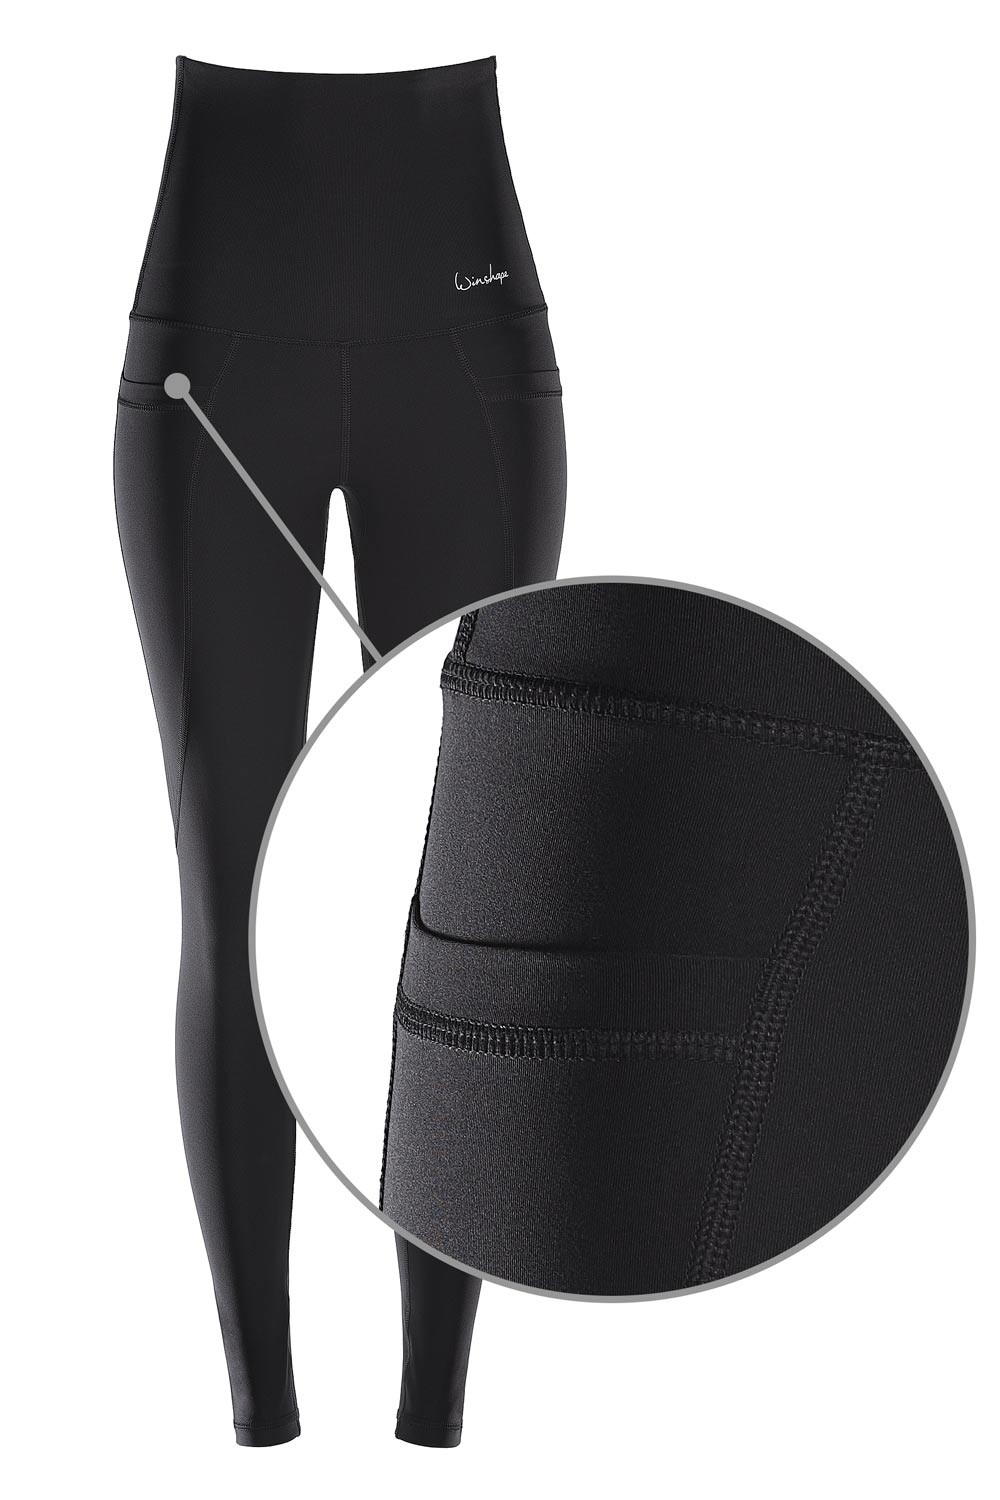 Slim Taschen, Tights Waist” Functional schwarz, “High Shape HWL114 Power mit Style Winshape drei praktischen